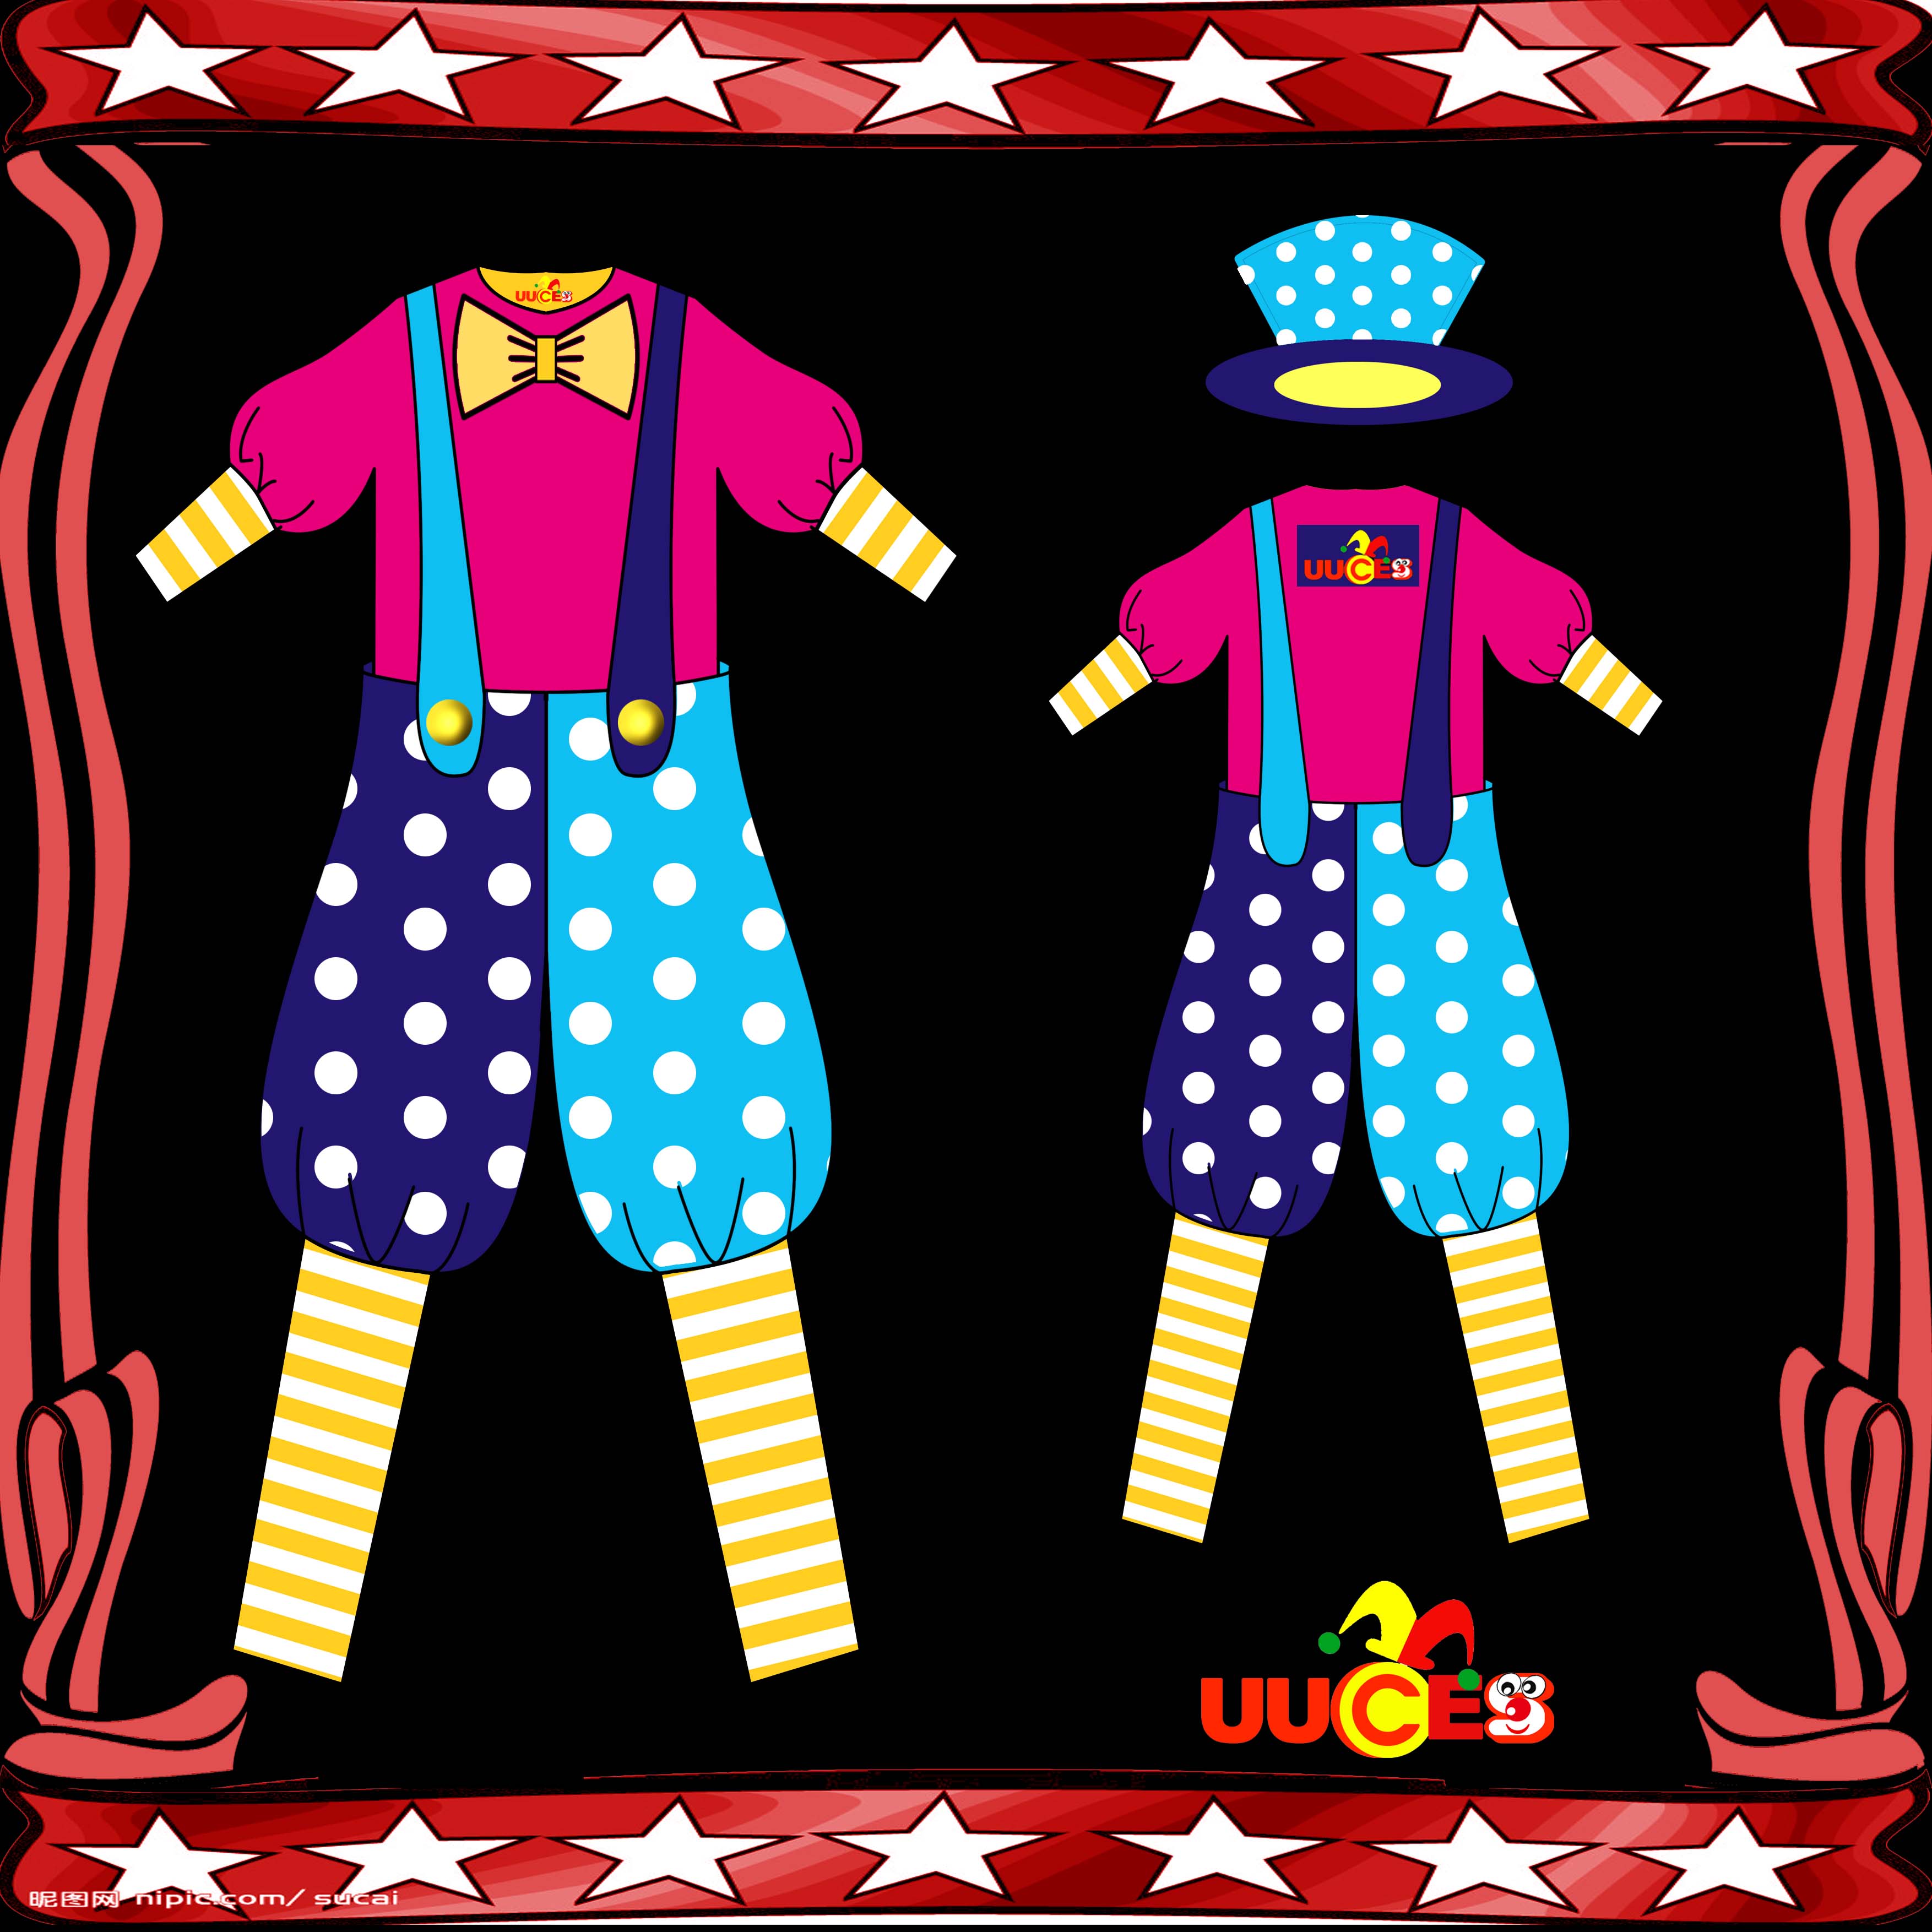 上海由u小丑特色文化服务有限公司现征集小丑服装设计